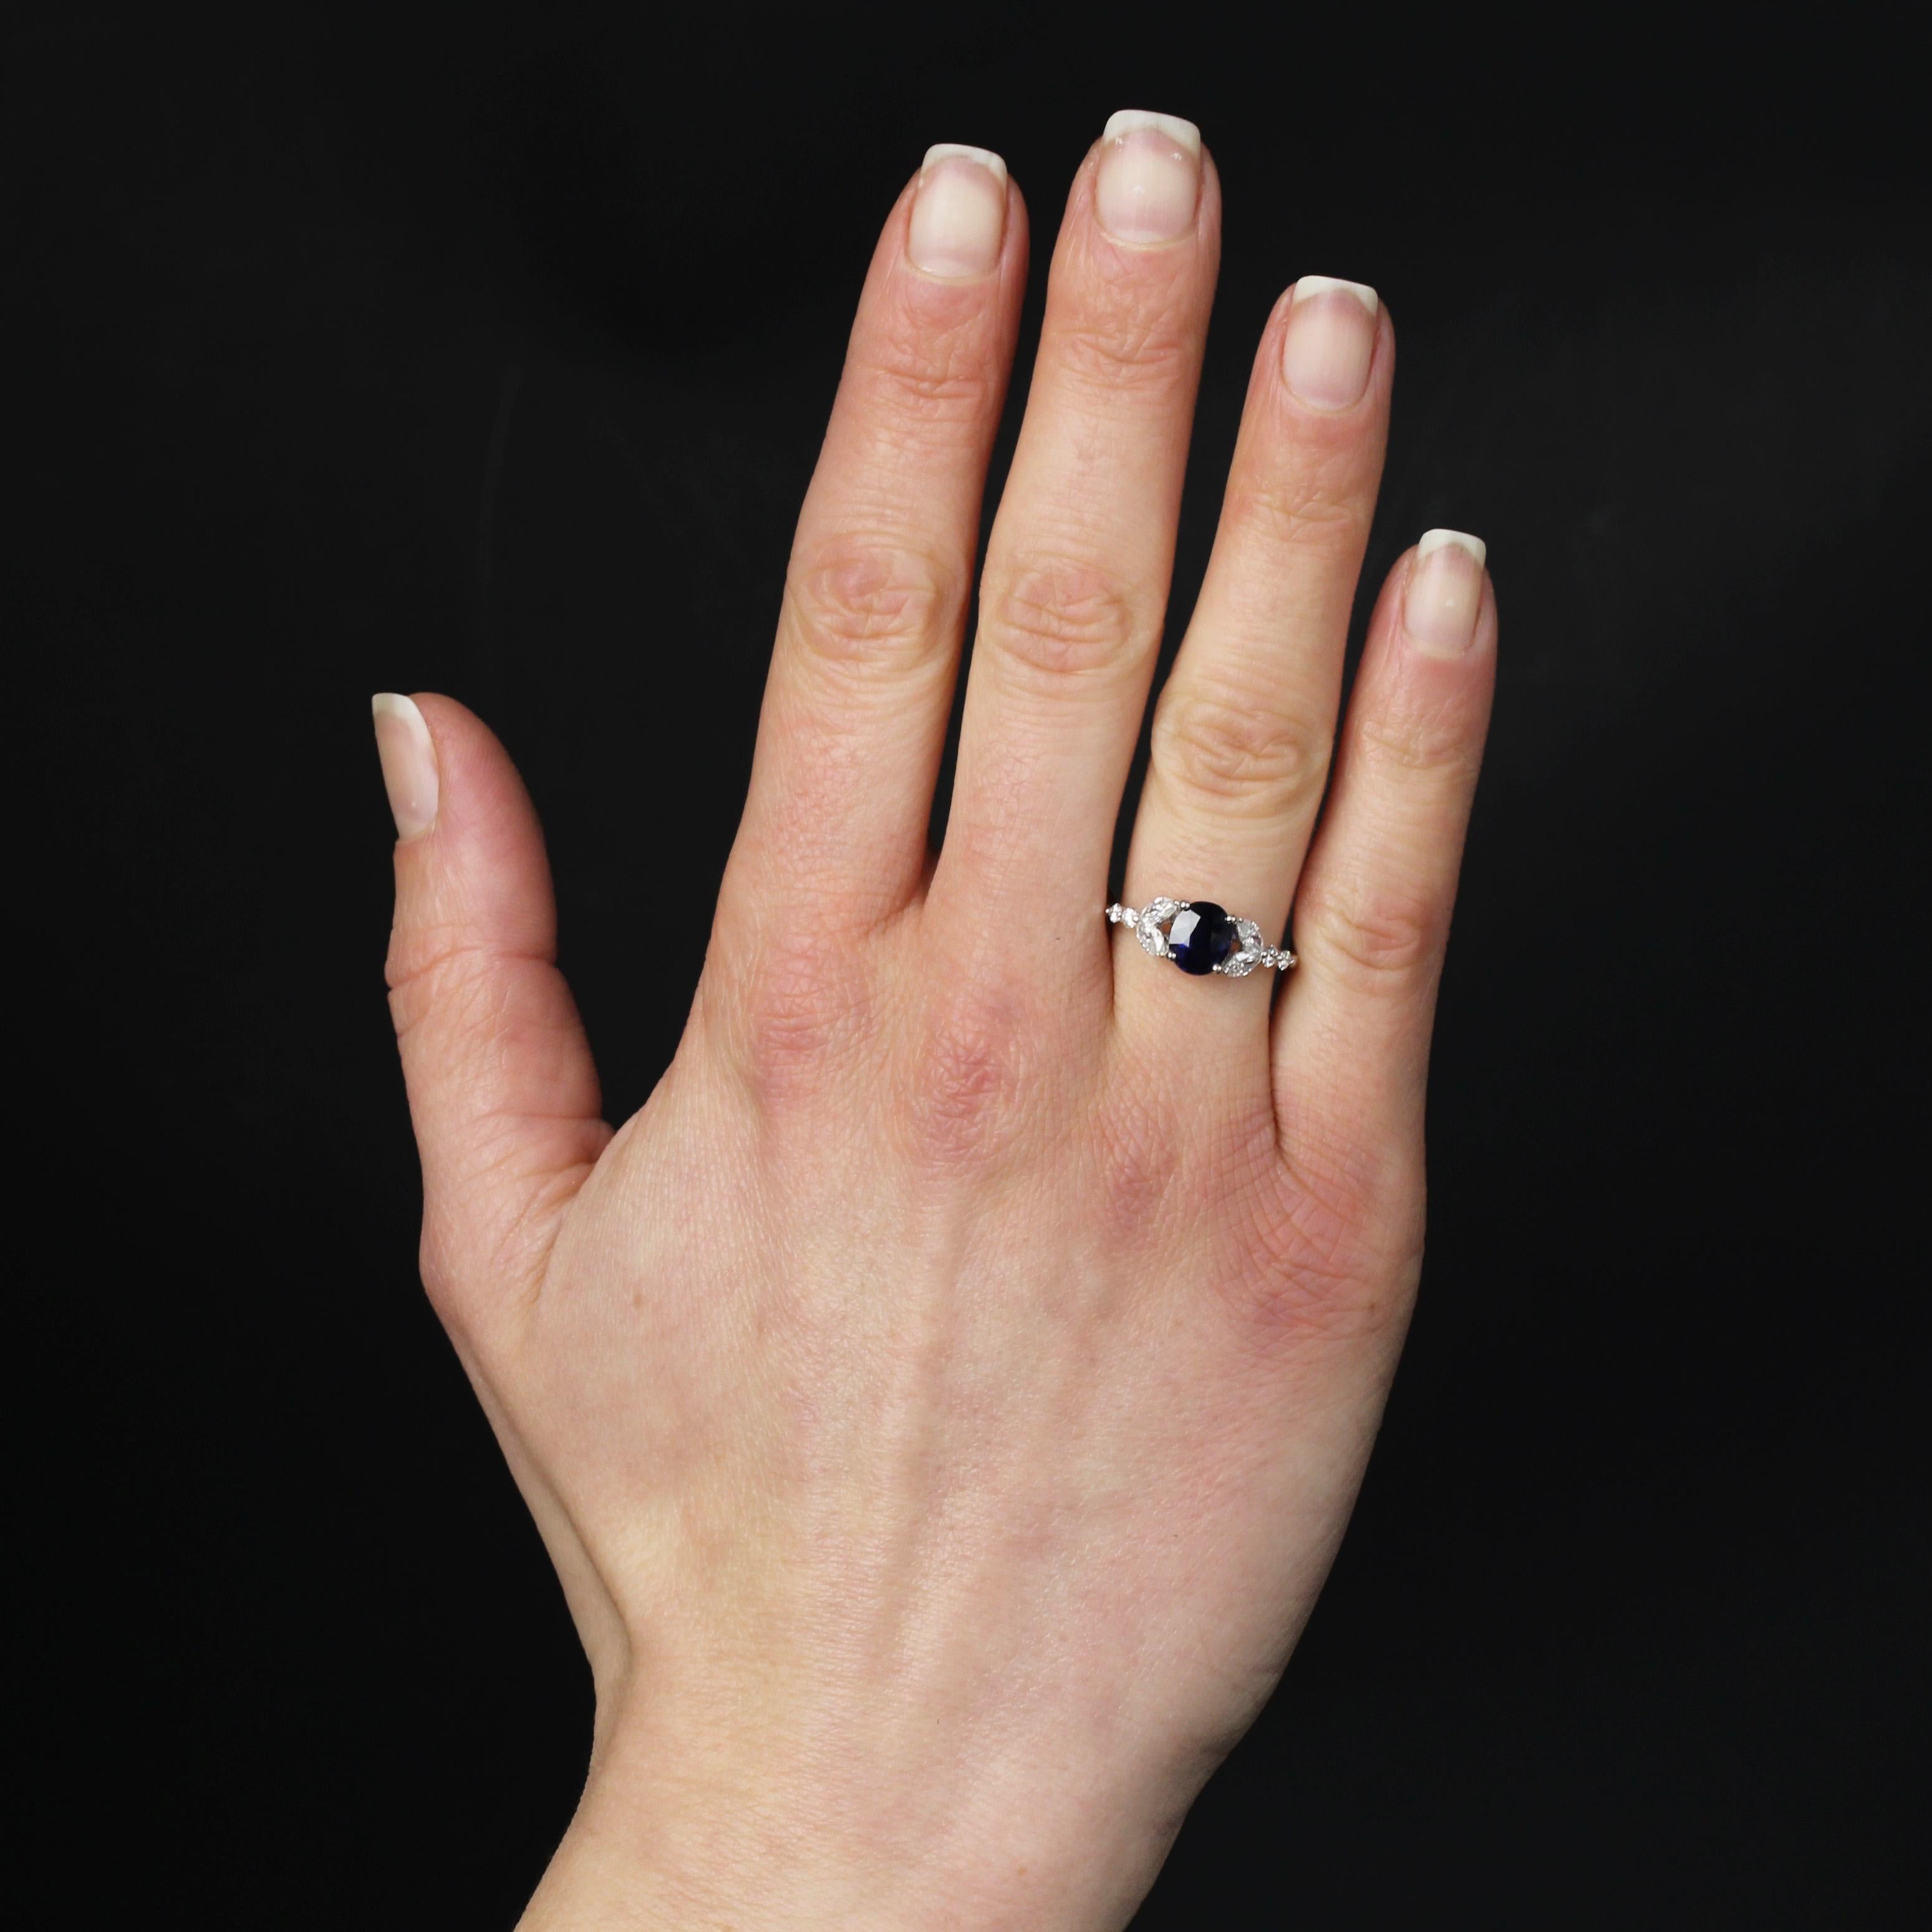 Ring aus 18 Karat Weißgold, Adlerkopfpunze.
Wunderschöner Saphir-Diamant-Ring mit einem tiefblauen ovalen Saphir in der Mitte. Die durchbrochene Fassung ist auf beiden Seiten mit 2 x 2 Diamanten im Marquise-Schliff und 2 x 2 modernen Brillanten